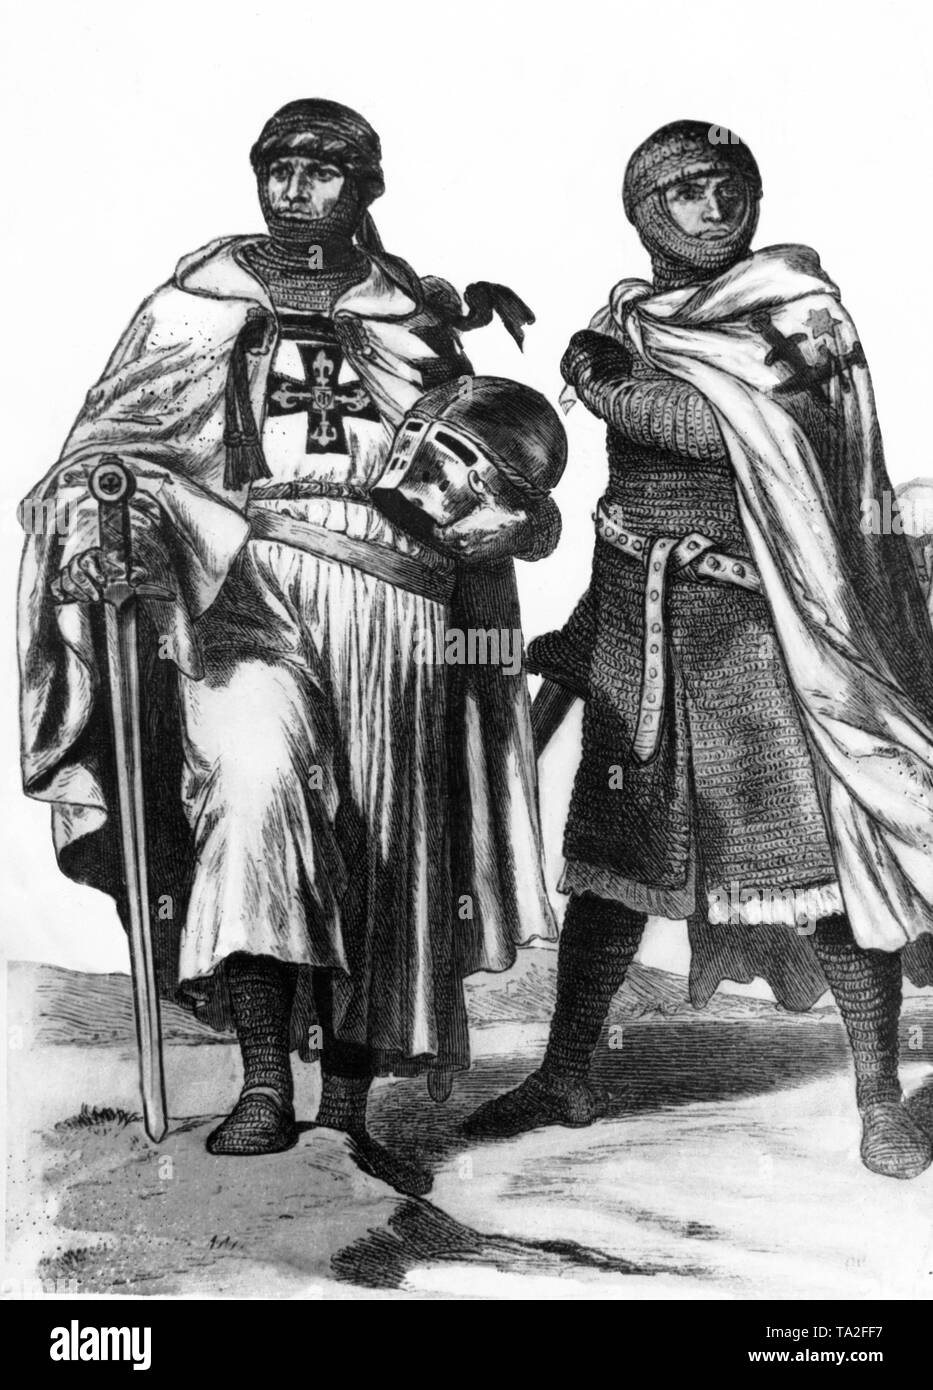 Il Gran Maestro dell'Ordine Teutonico, l'ufficio del Grand Master è stata la più alta carica nell'Ordine Teutonico e gallant membro dell'ordine Livonian. L'ordine di Livonian era un ordine spirituale dei cavalieri e fu fondata nel 1202 da Theoderich von Treiden su iniziativa del vescovo Alberto I di riga per proselitismo Livonia. Nel 1237, dopo la sconfitta di Schaulen, l'ordine è stato incorporato nell'Ordine Teutonico. Foto Stock